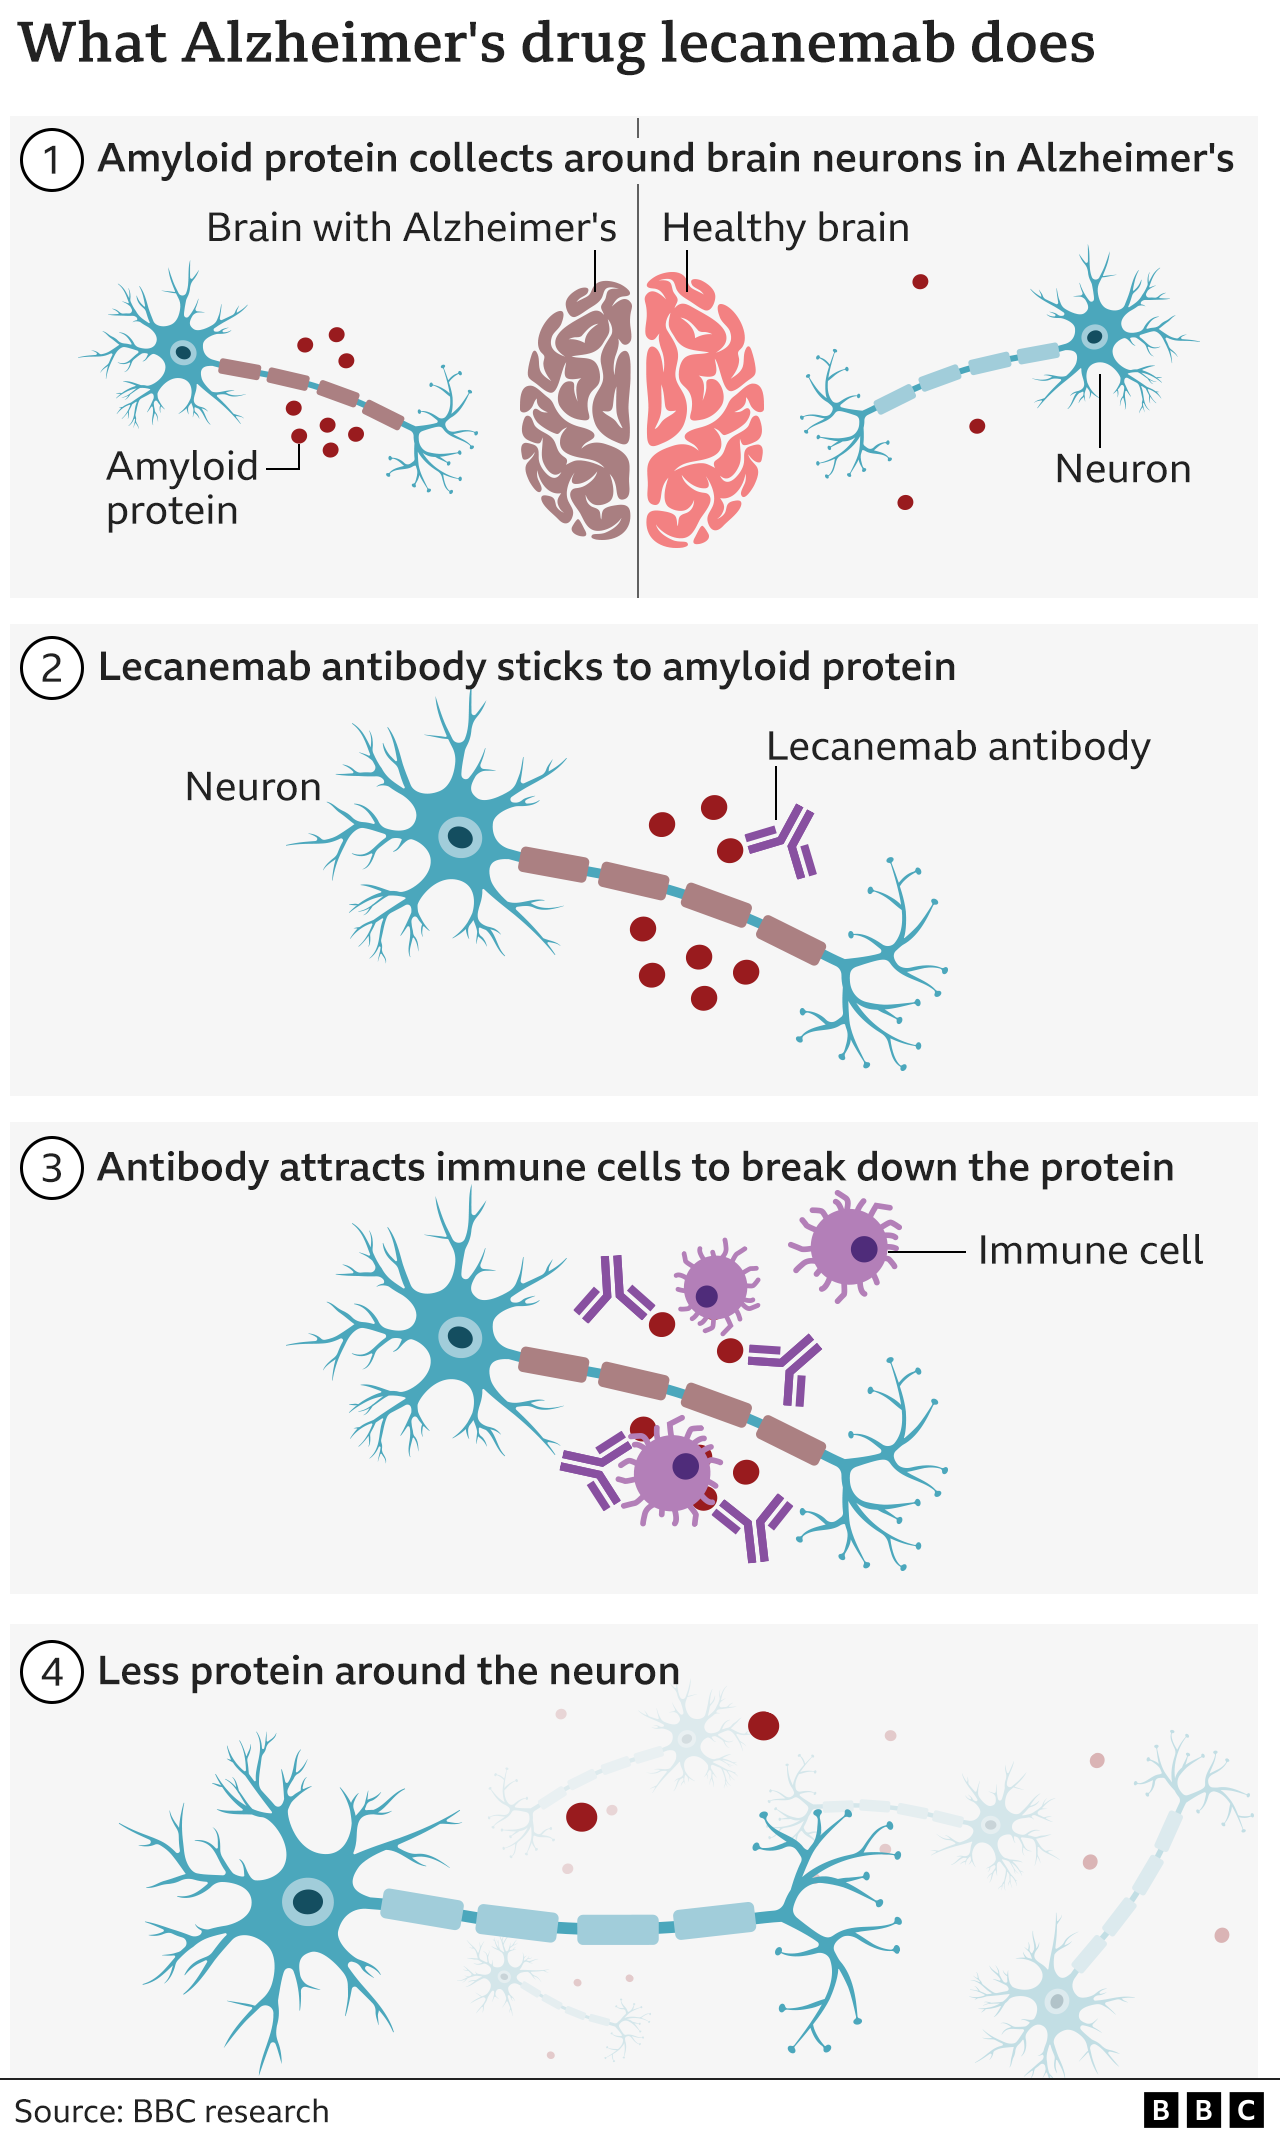 График, показывающий, что делает антитело к леканемабу — прикрепляется к амелоидным белкам, которых больше в мозге, пораженном болезнью Альцгеймера, чем в здоровом мозге, а затем привлекает иммунные клетки организма, которые расщепляют белок